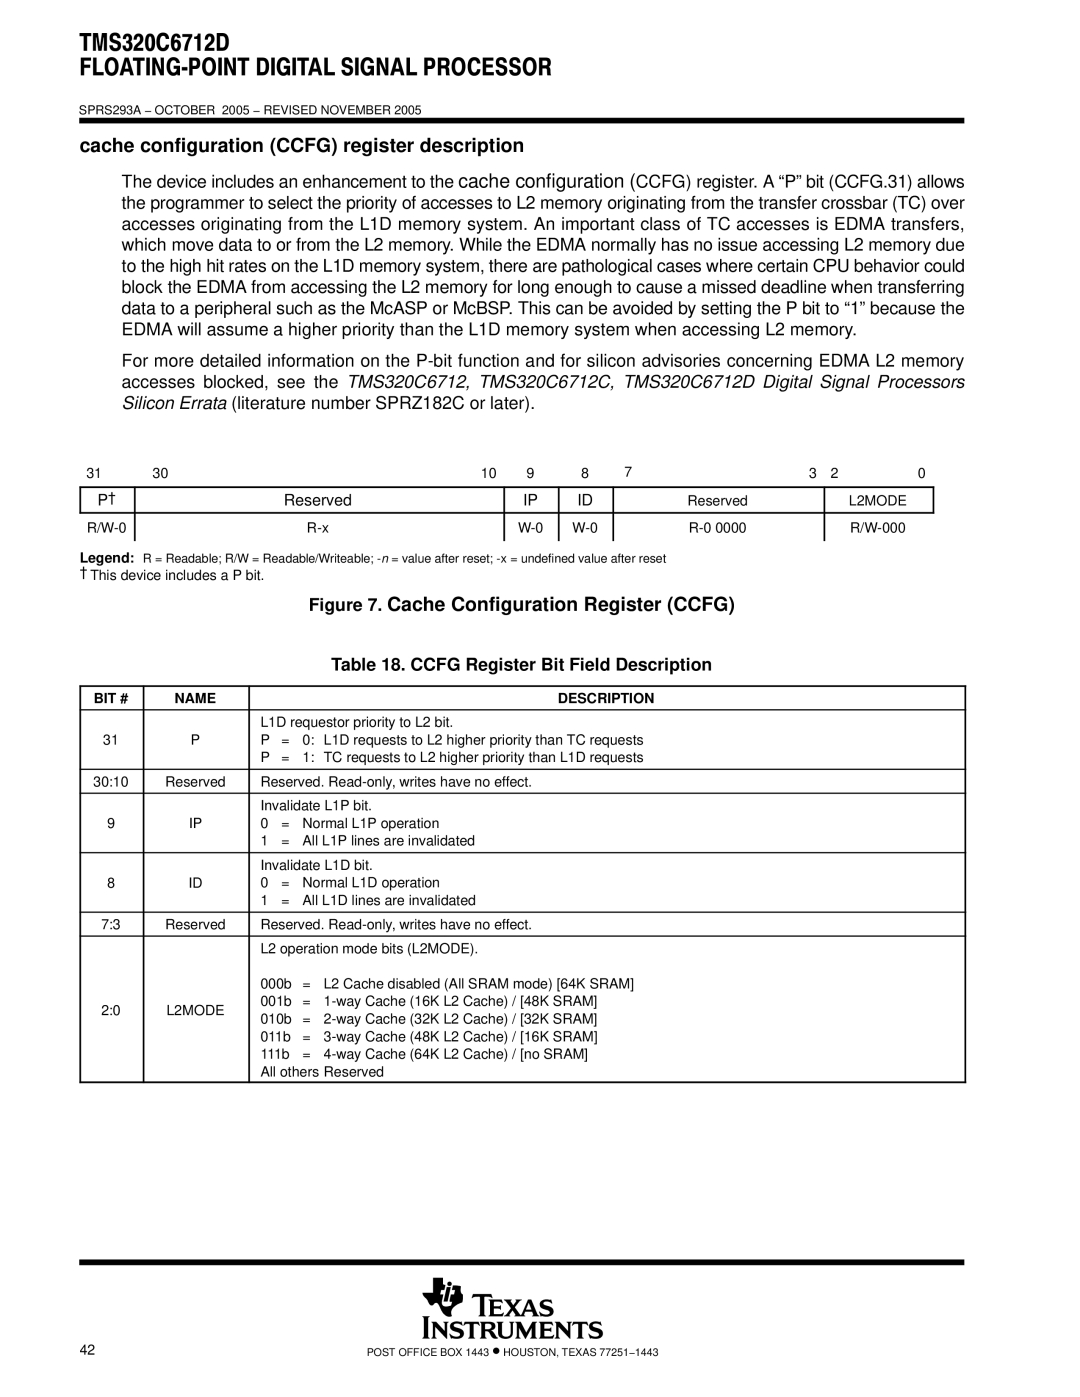 Texas Instruments TMS320C6712D Cache configuration Ccfg register description, Ccfg Register Bit Field Description, L2MODE 